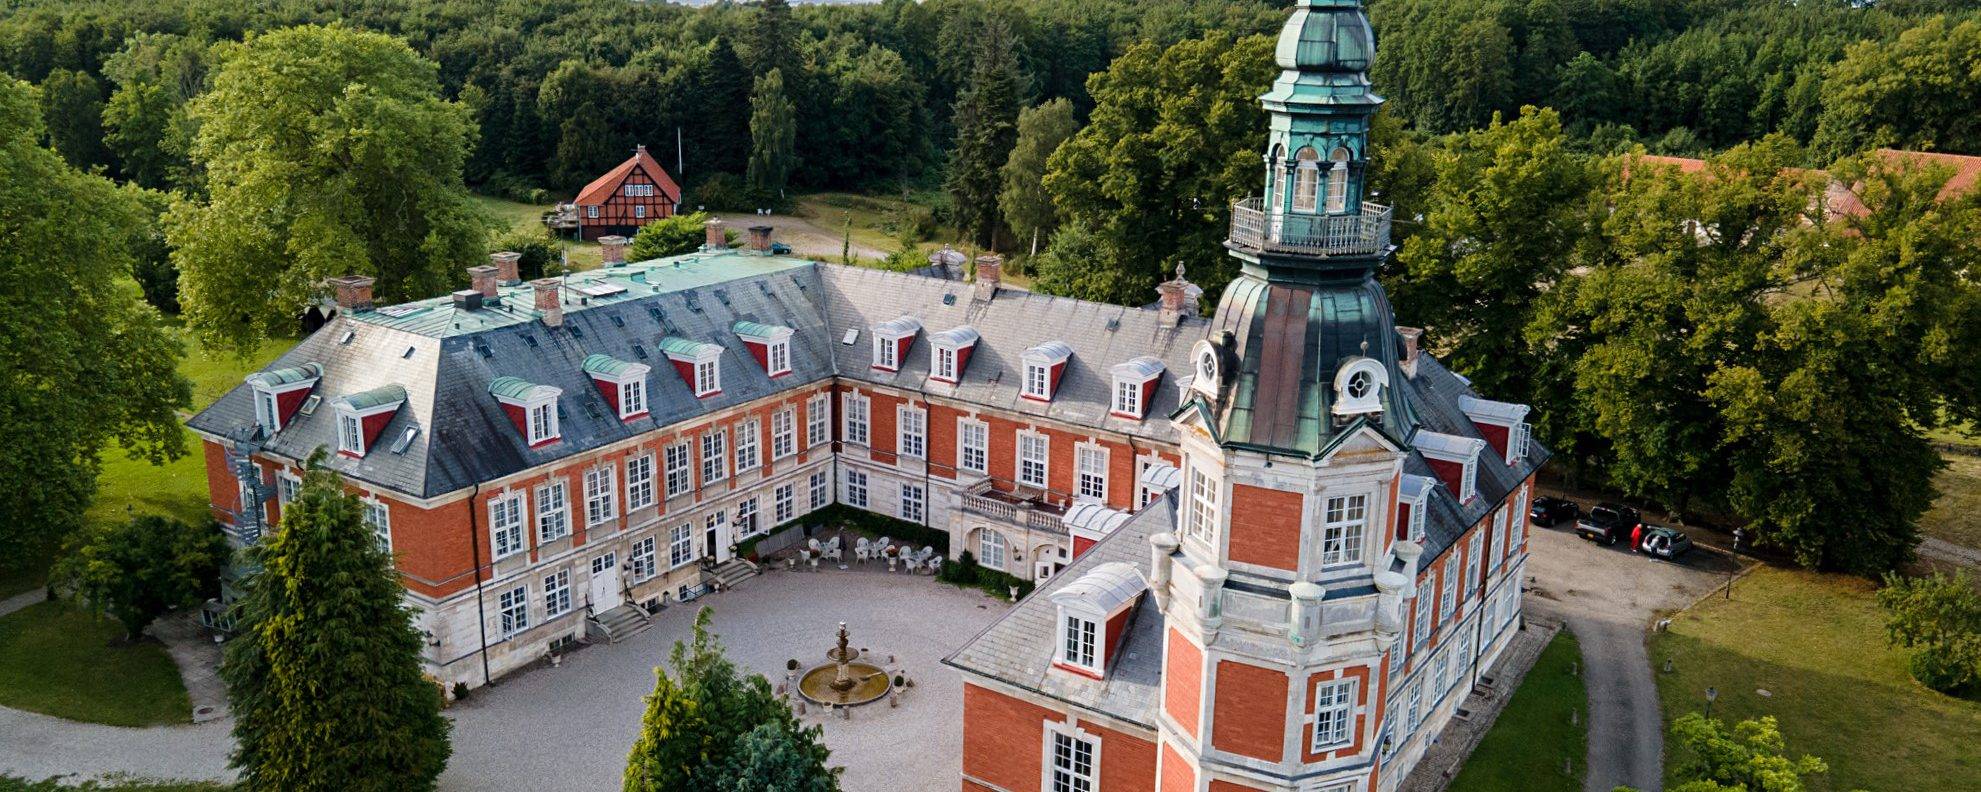 Hvedholm Slot